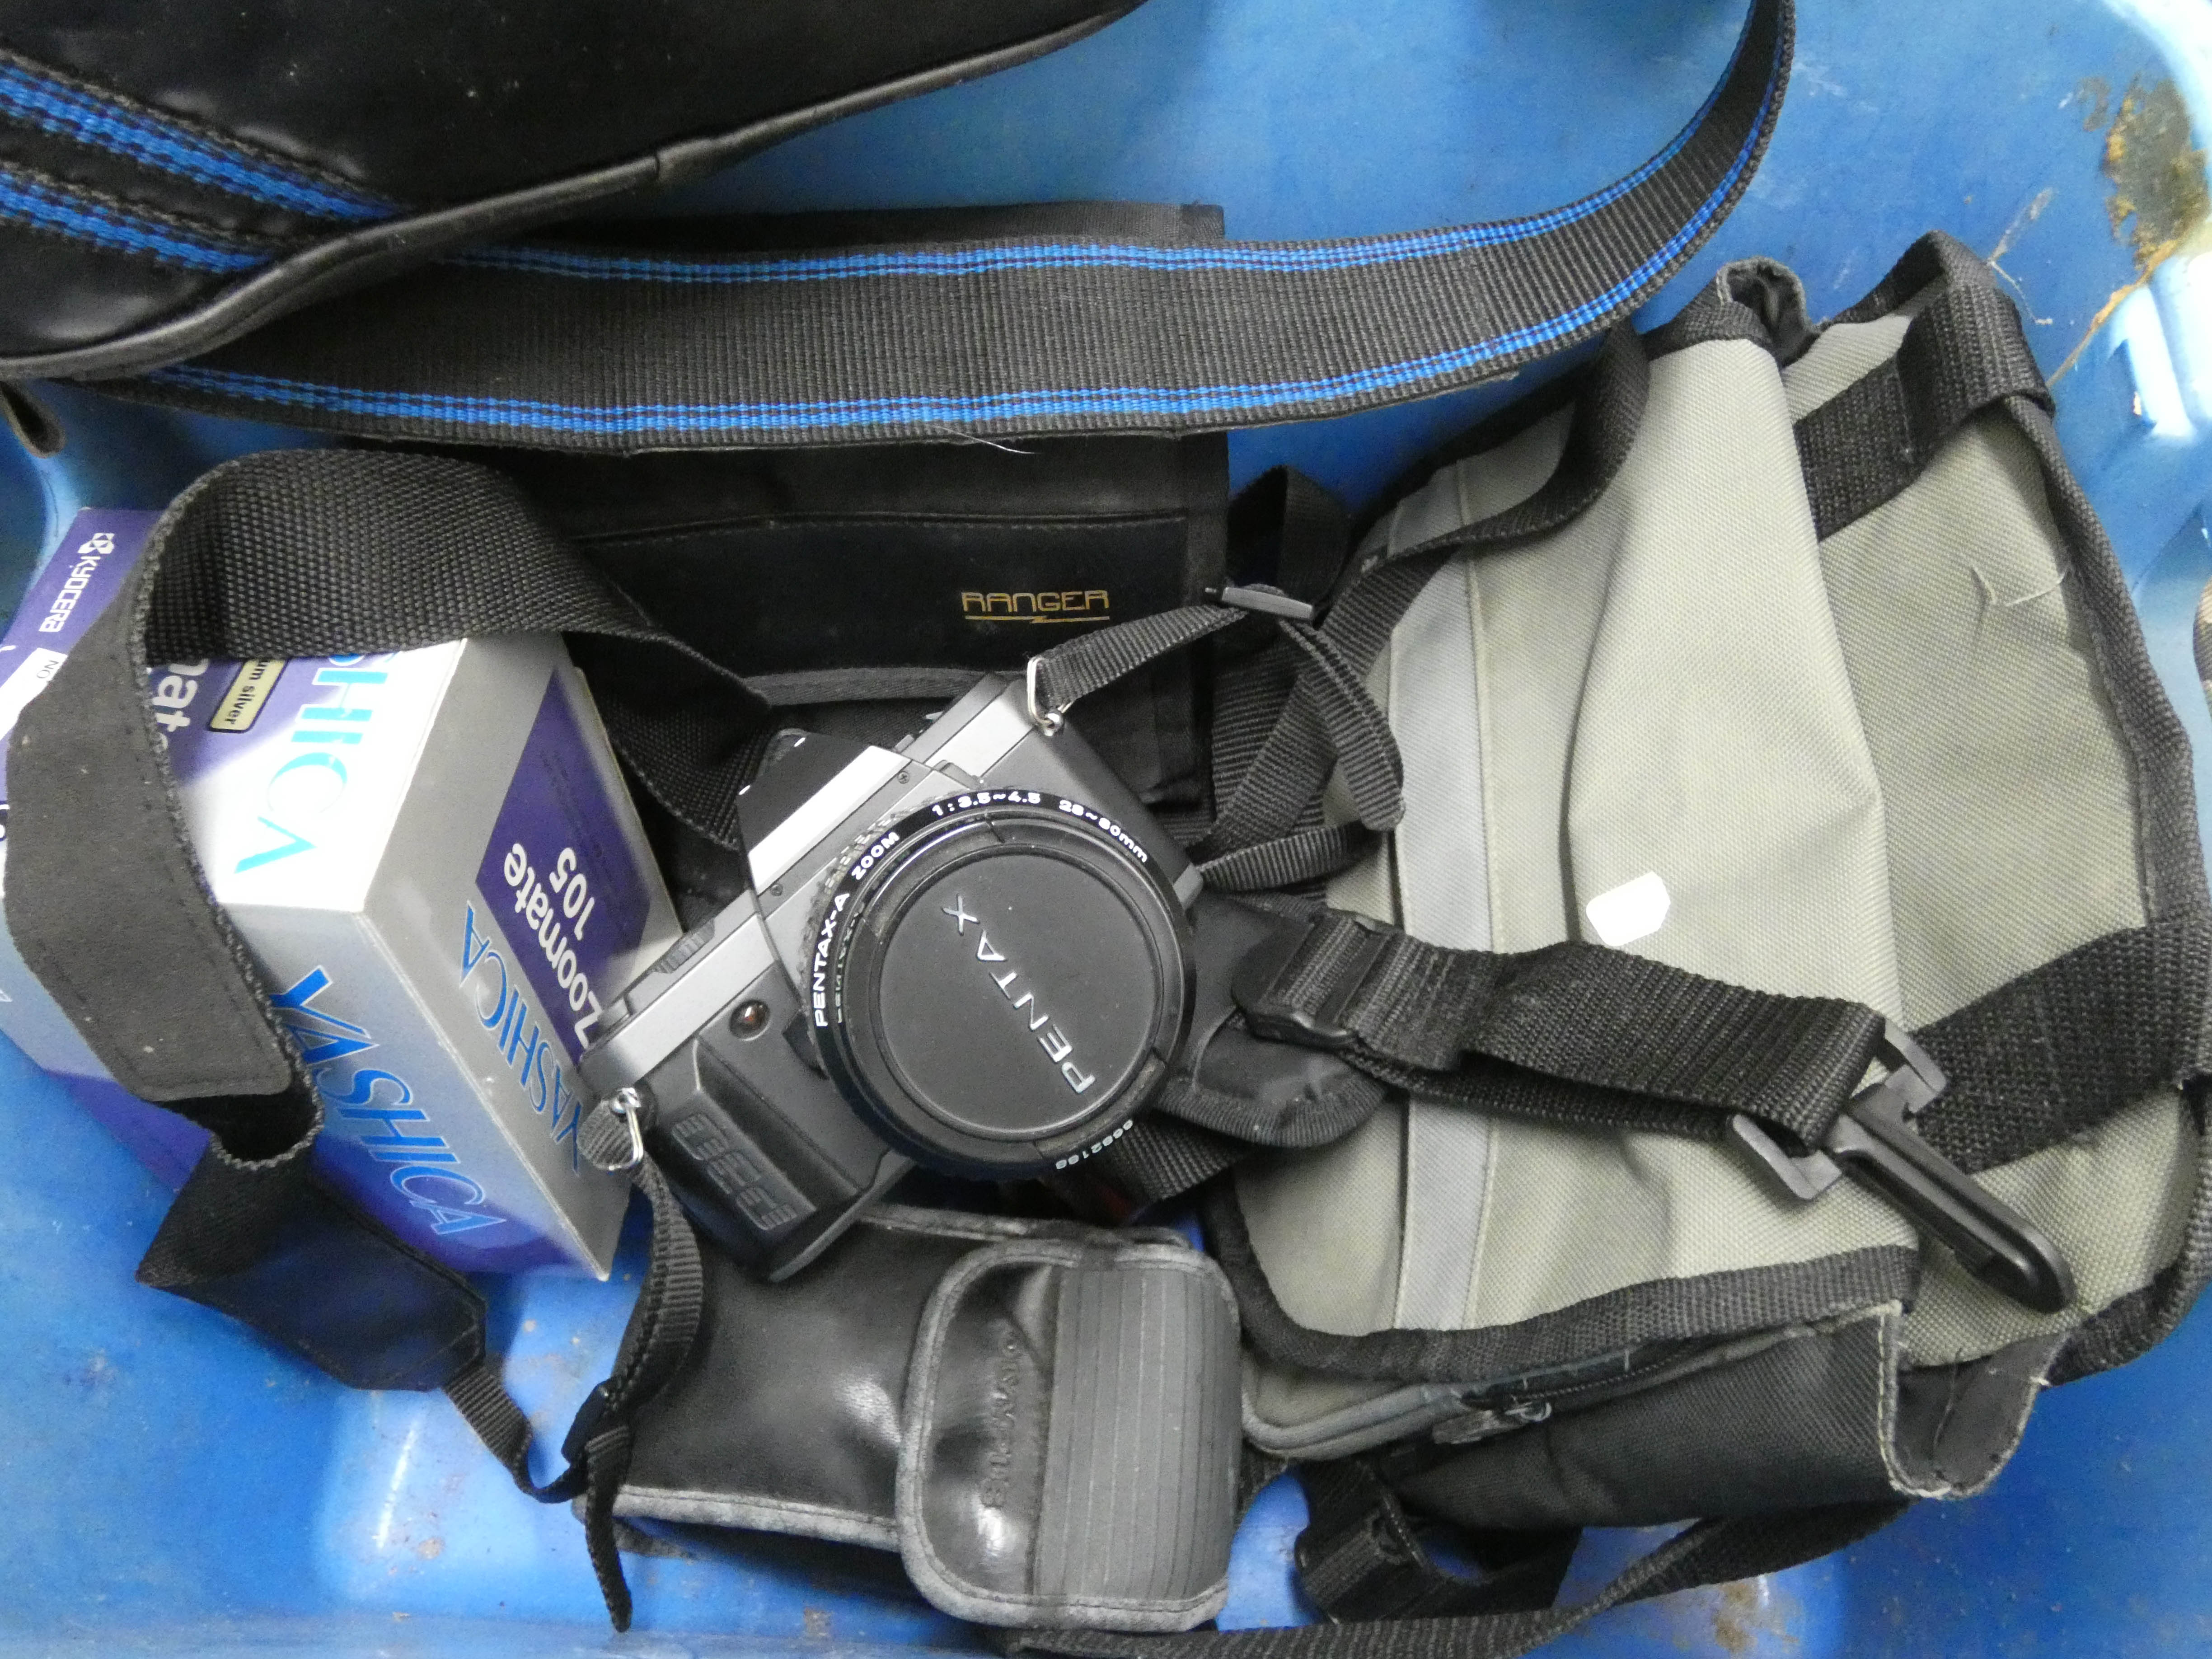 A quantity of cameras, camera accessories,